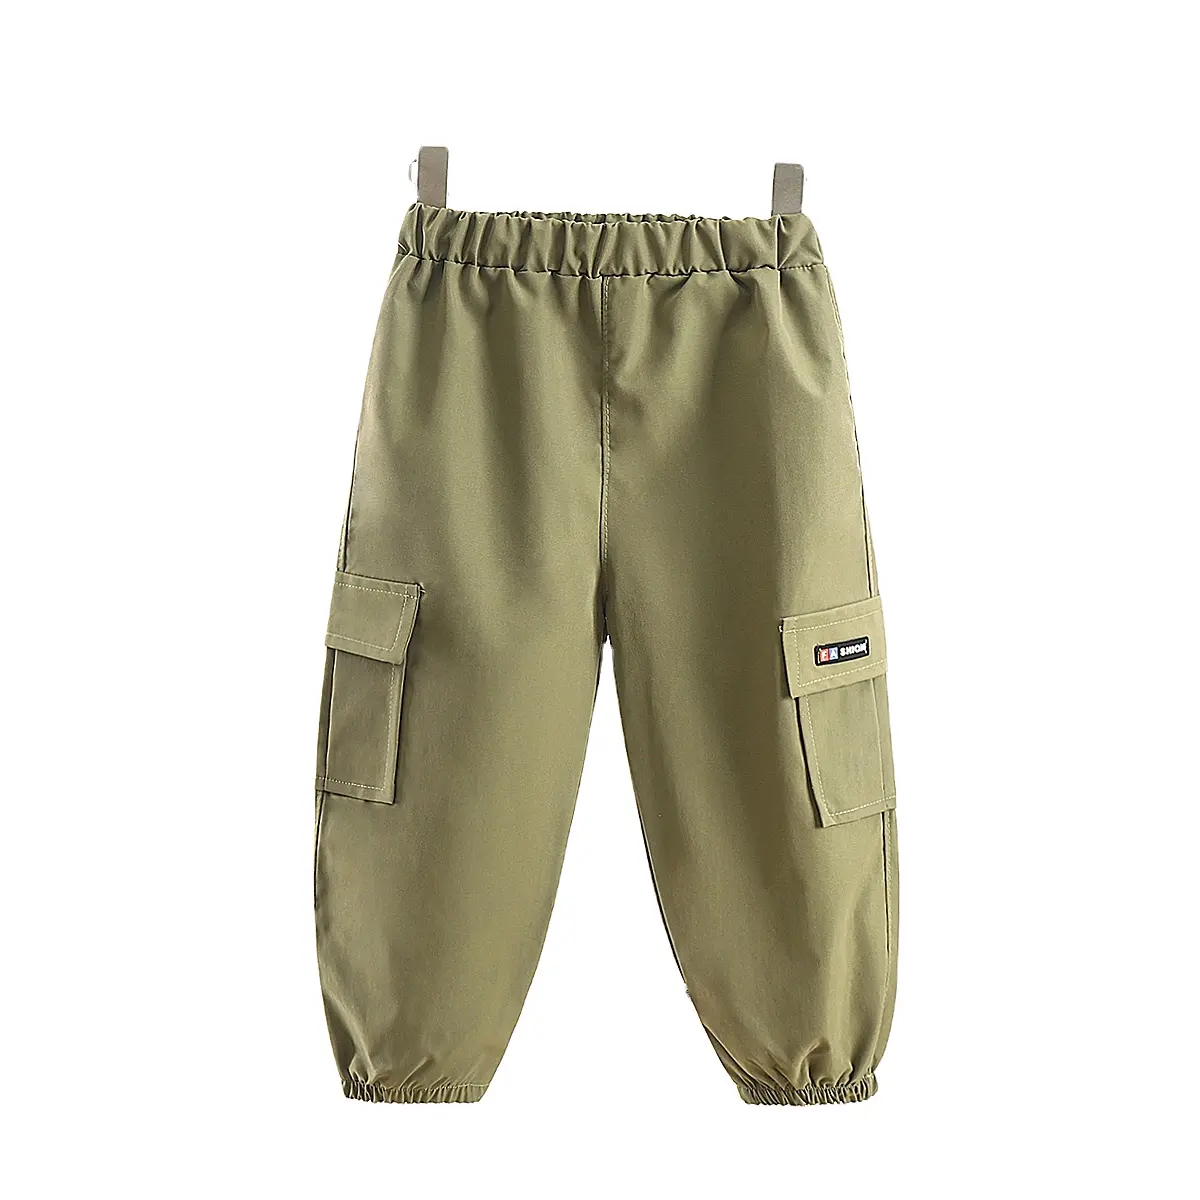 उच्च गुणवत्ता वाले लड़के की पैंट हिप हॉप मुद्रित पैंट लड़के वसंत शरद ऋतु सफारी लड़के बच्चों के लिए लंबे पैंट